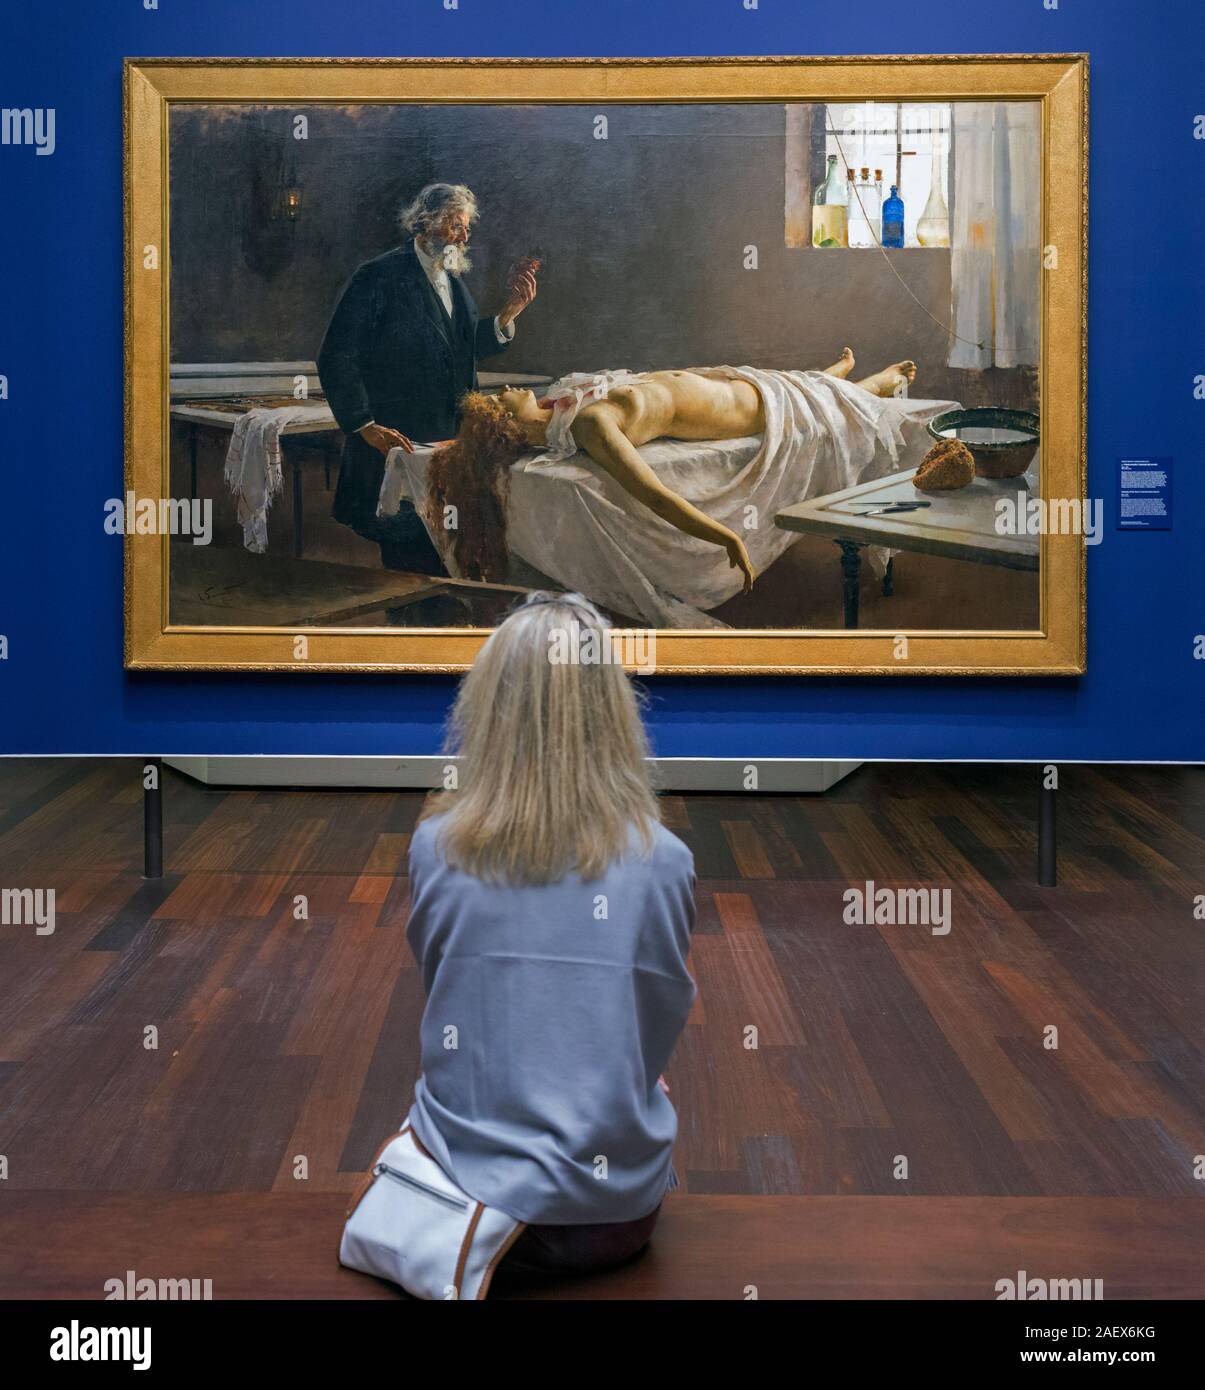 Affichage des visiteurs de l'anatomie/Cœur et elle avait un coeur par l'artiste espagnol Enrique Simonet Lombardo. Exposé dans le musée de Malaga dans le Palacio d Banque D'Images